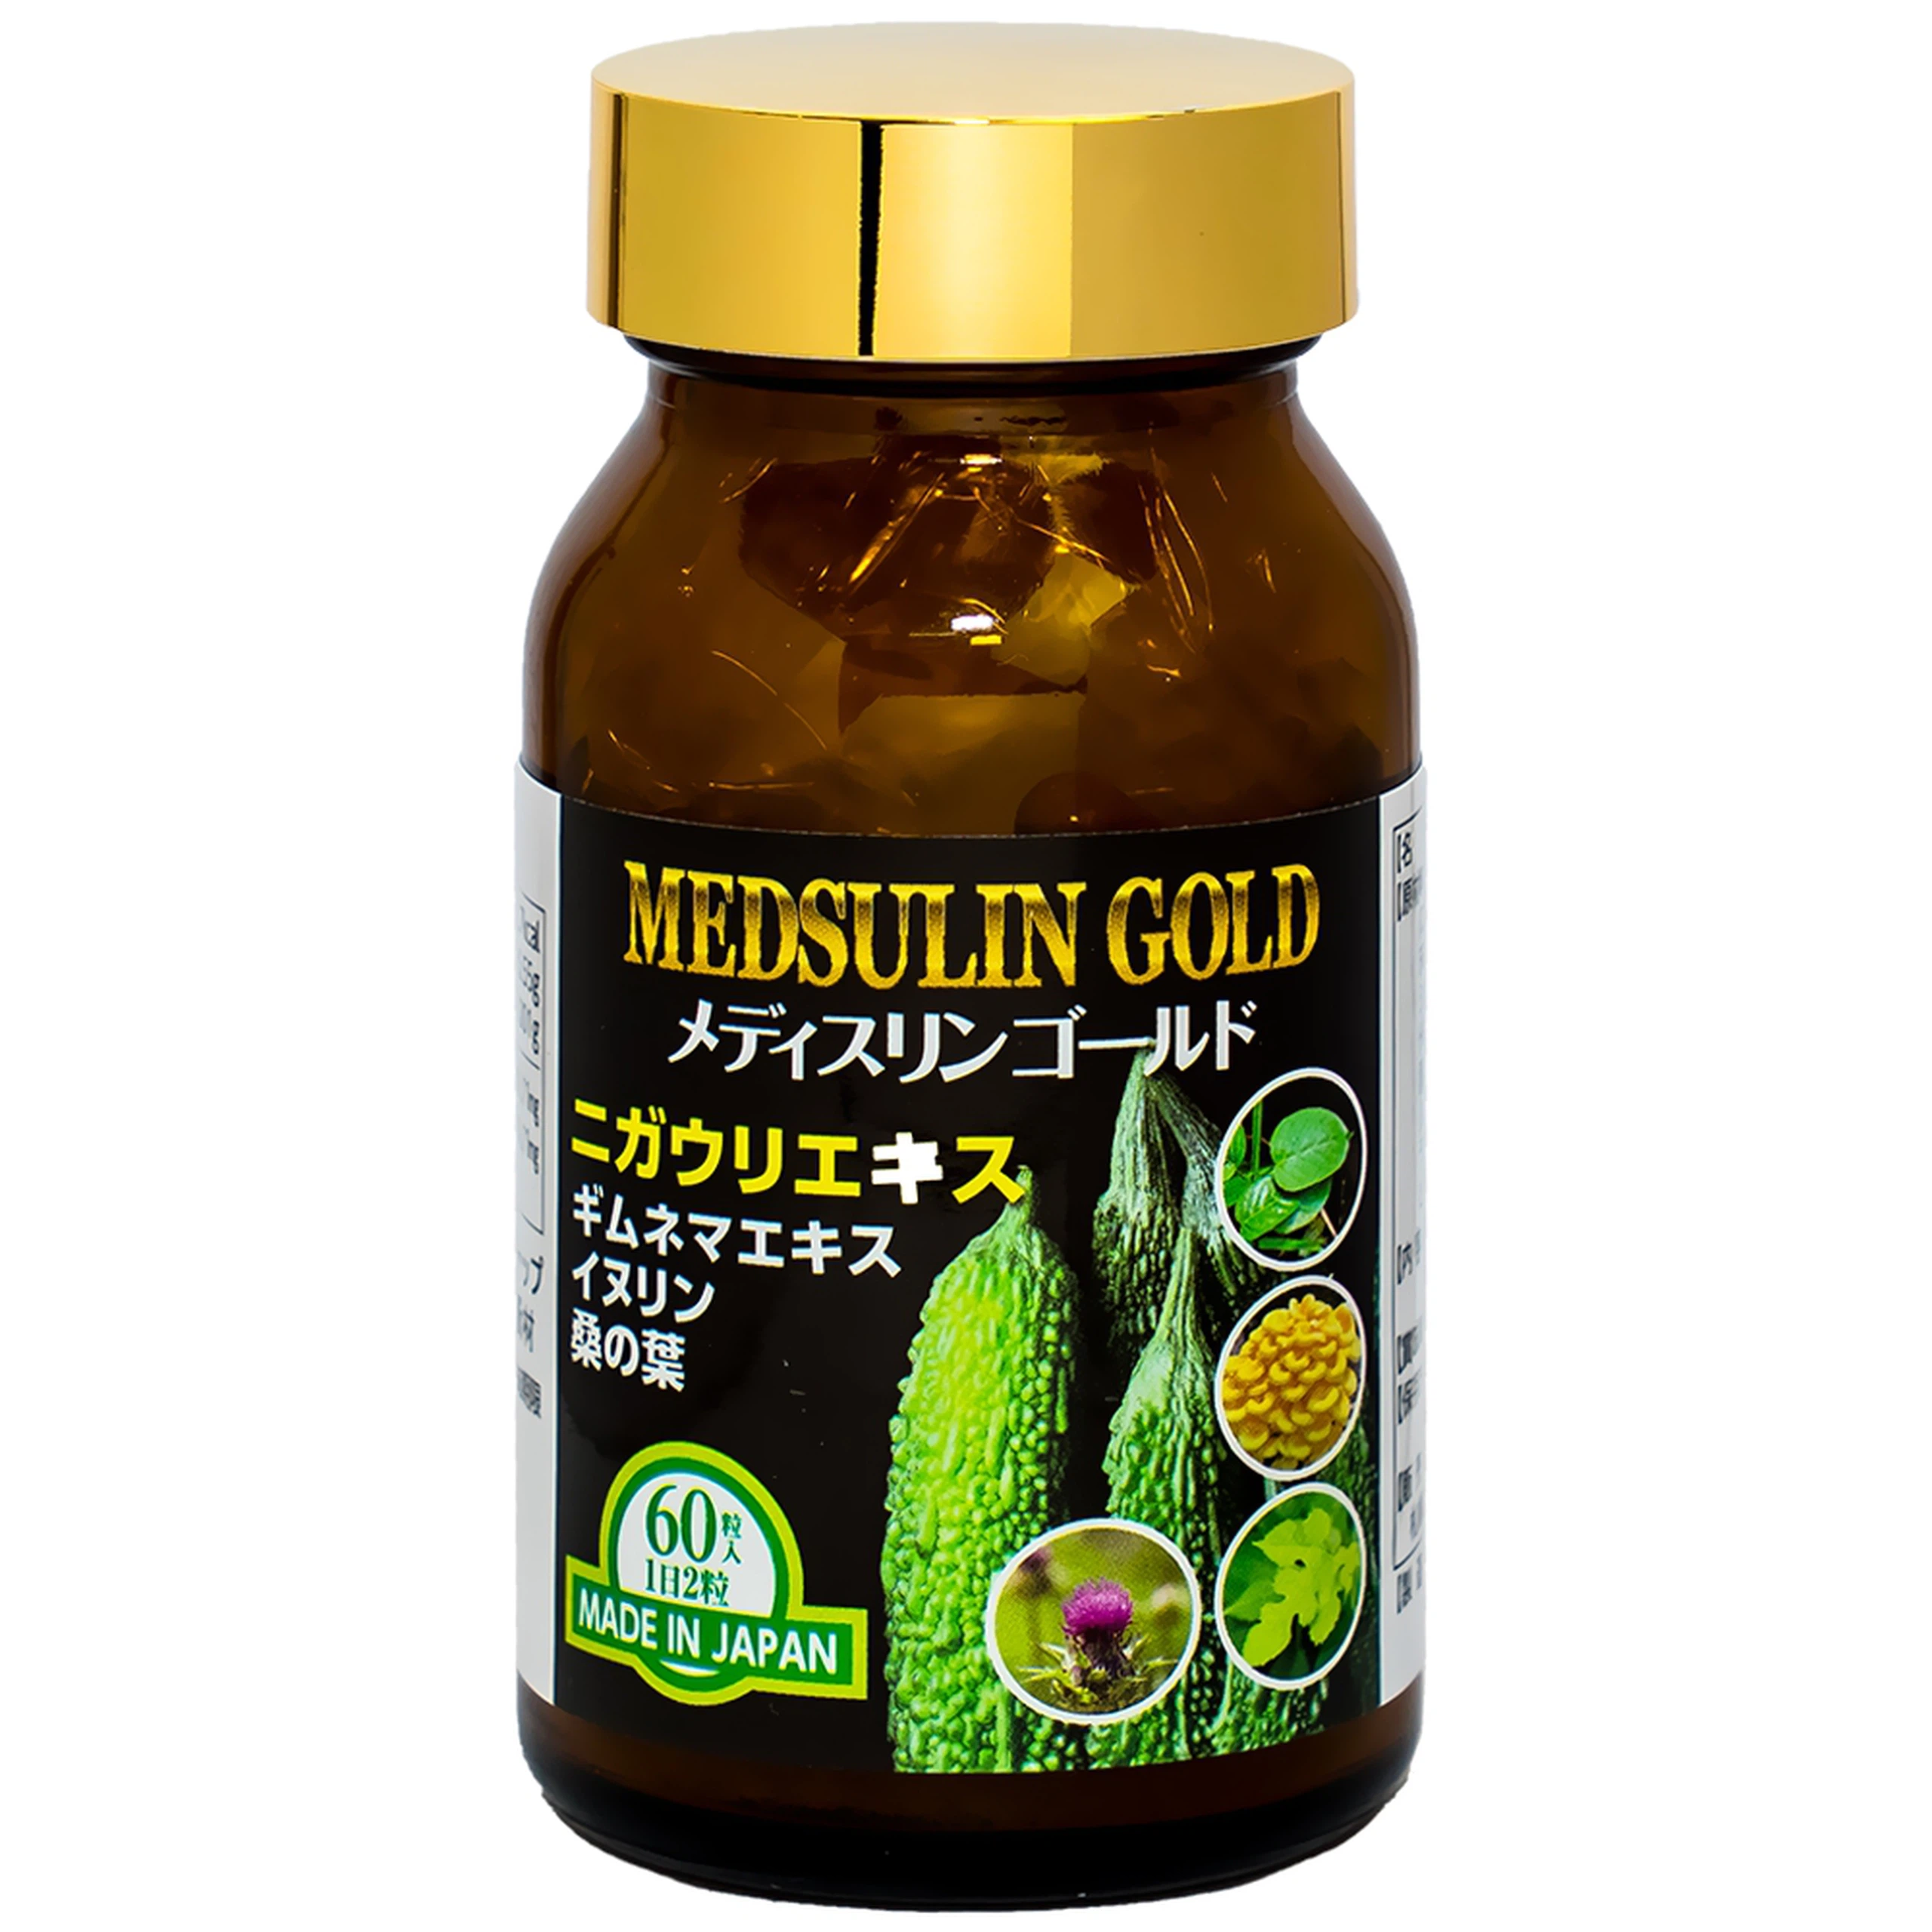 Viên uống Medsulin Gold Jpanwell giúp hạ đường huyết, hỗ trợ chuyển hóa đường (60 viên)